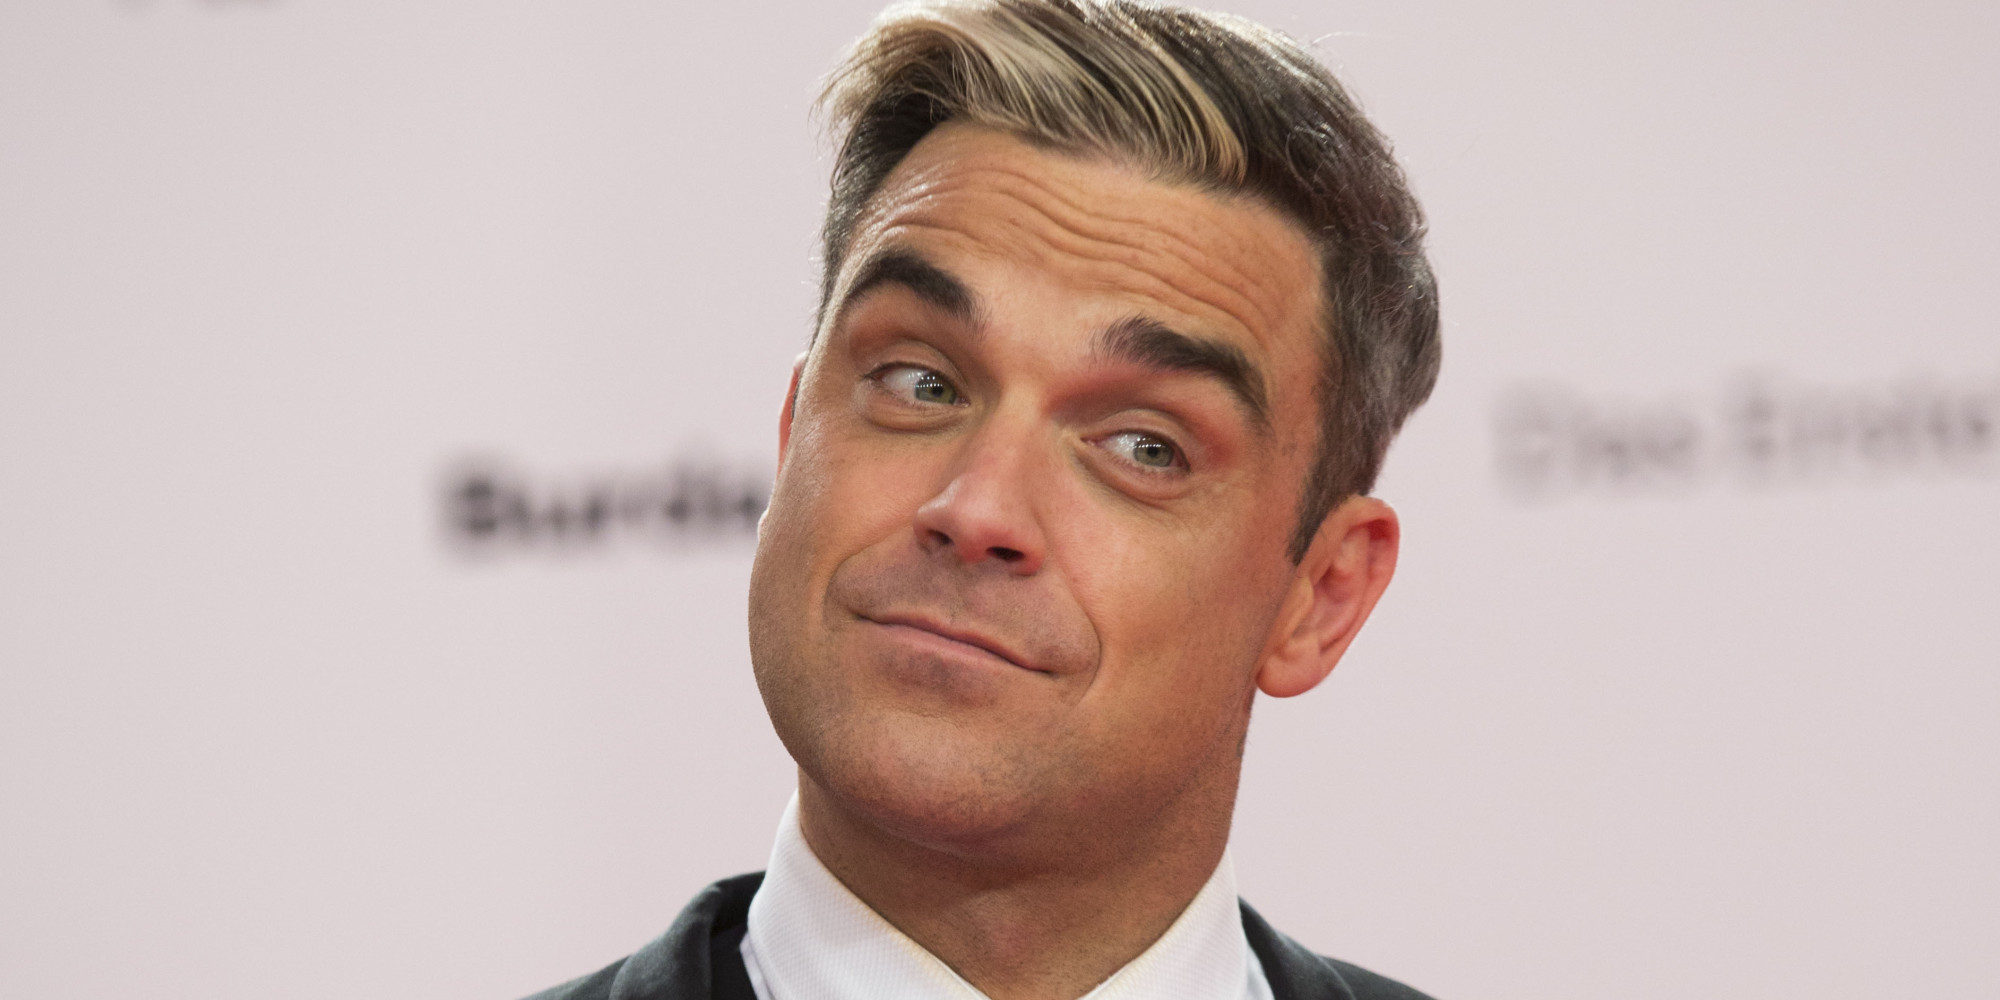 Robbie Williams #15